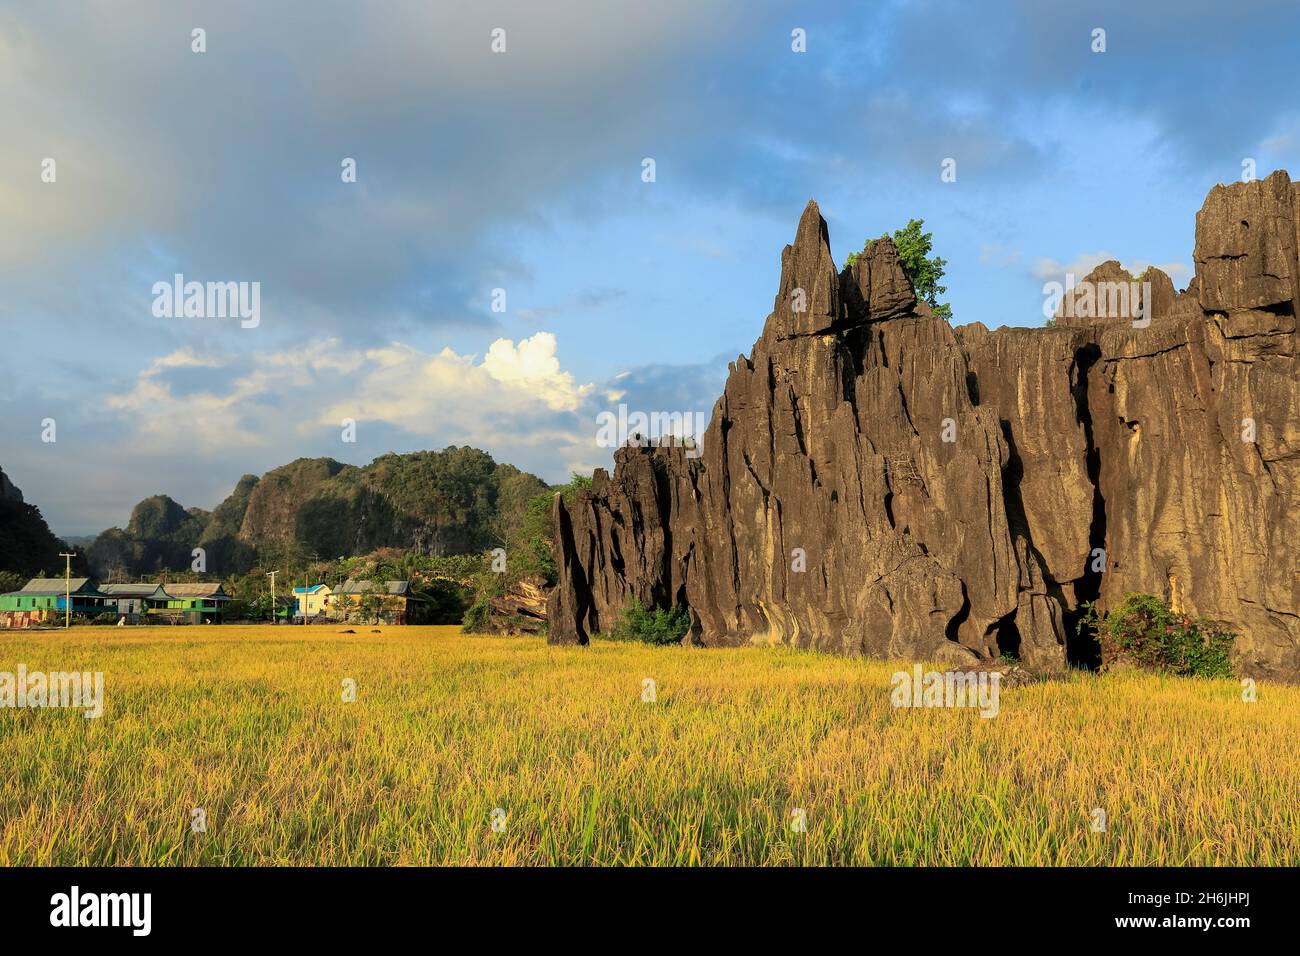 Roche calcaire érodée et village de Salenrang dans la région karstique, Rammang-Rammang, Maros, Sulawesi du Sud, Indonésie,Asie du Sud-est, Asie Banque D'Images